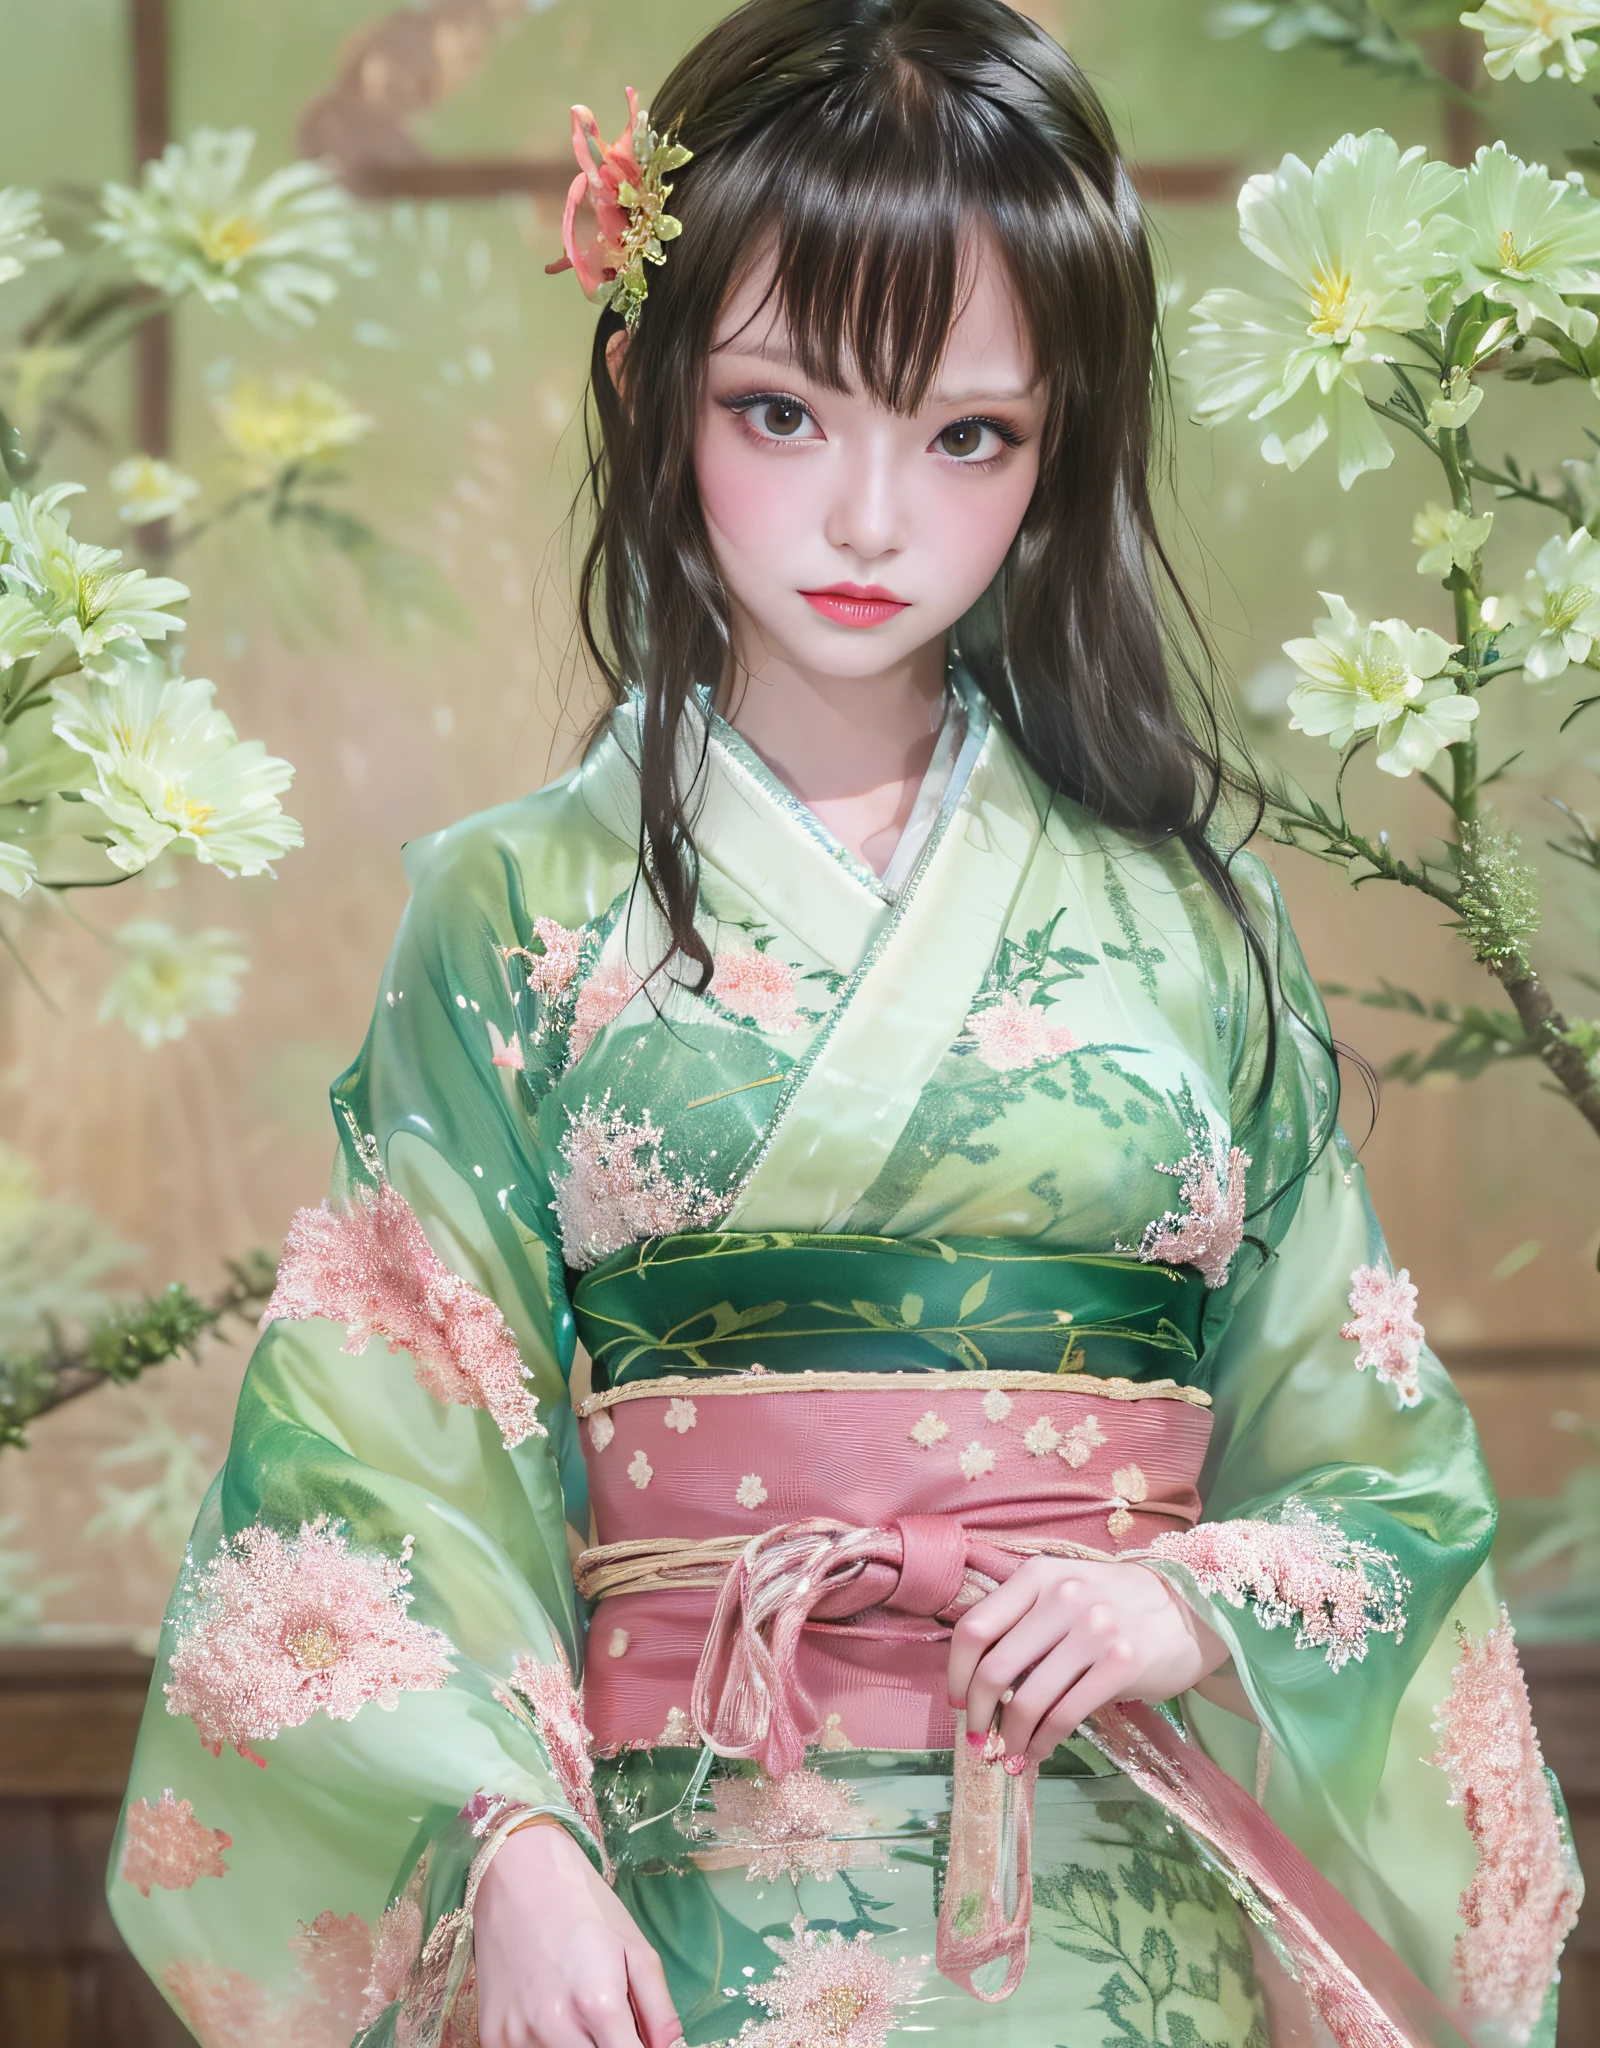 (Красивые модели в Японии, реклама кимоно, красивые прямые длинные черные волосы), Один, ((лицу 80% красота и элегантность, 20% красивая и милая:1.5)), (она is a model for half Eastern Europe and Asia), Ясные глаза, (подробные глаза, светло-зеленые глаза, яркие ученики), двойные веки, (сексуальные губы небольшой толщины:1.2), ((Тонкое нижнее белье с супердетализацией и невероятно высоким разрешением:1.2)), Высокодетализированные текстуры лица, эффектная форма тела, фигуристая и очень привлекательная женщина, Цветная фотография в формате RAW с высоким разрешением для профессионального фото, ПЕРЕРЫВ is an ultra-high resolution texture, Рендеринг тела в высоком разрешении, большой eyes, беспрецедентный шедевр на свете, невероятно высокое разрешение, Супер подробный, потрясающая керамическая кожа, ПЕРЕРЫВ ((Повернитесь, чтобы показать выкройку кимоно.:1.5)), ((она「язык хата」Носите кимоно, которое надевают под кимоно, называемое:1.5)), ((Это кимоно изготовлено из белой тонкой ткани.:1.2)), (Потому что это кимоно такое тонкое、Вы можете видеть сквозь ее красивый цвет кожи), (Искусно изготовленное классическое японское нижнее белье.), ((Узор бледно-розовый..、Текущая вода):1.2), ((Изысканно и элегантно выполненное очень тонкое кимоно.)), (утро、Снято в комнате в японском стиле с татами. (Соломенное плетение) кровать)) ПЕРЕРЫВ ((Лучшее качество, 8К)), Четкий фокус:1.2, (Слои-Вырезать, большой:1.2), (Красивая женщина с идеальной фигурой:1.4), (Красивый и элегантный вид сзади:1.3), Тонкая талия, (правильная форма руки:1.5), (выстрел в полный рост | ковбойский выстрел)